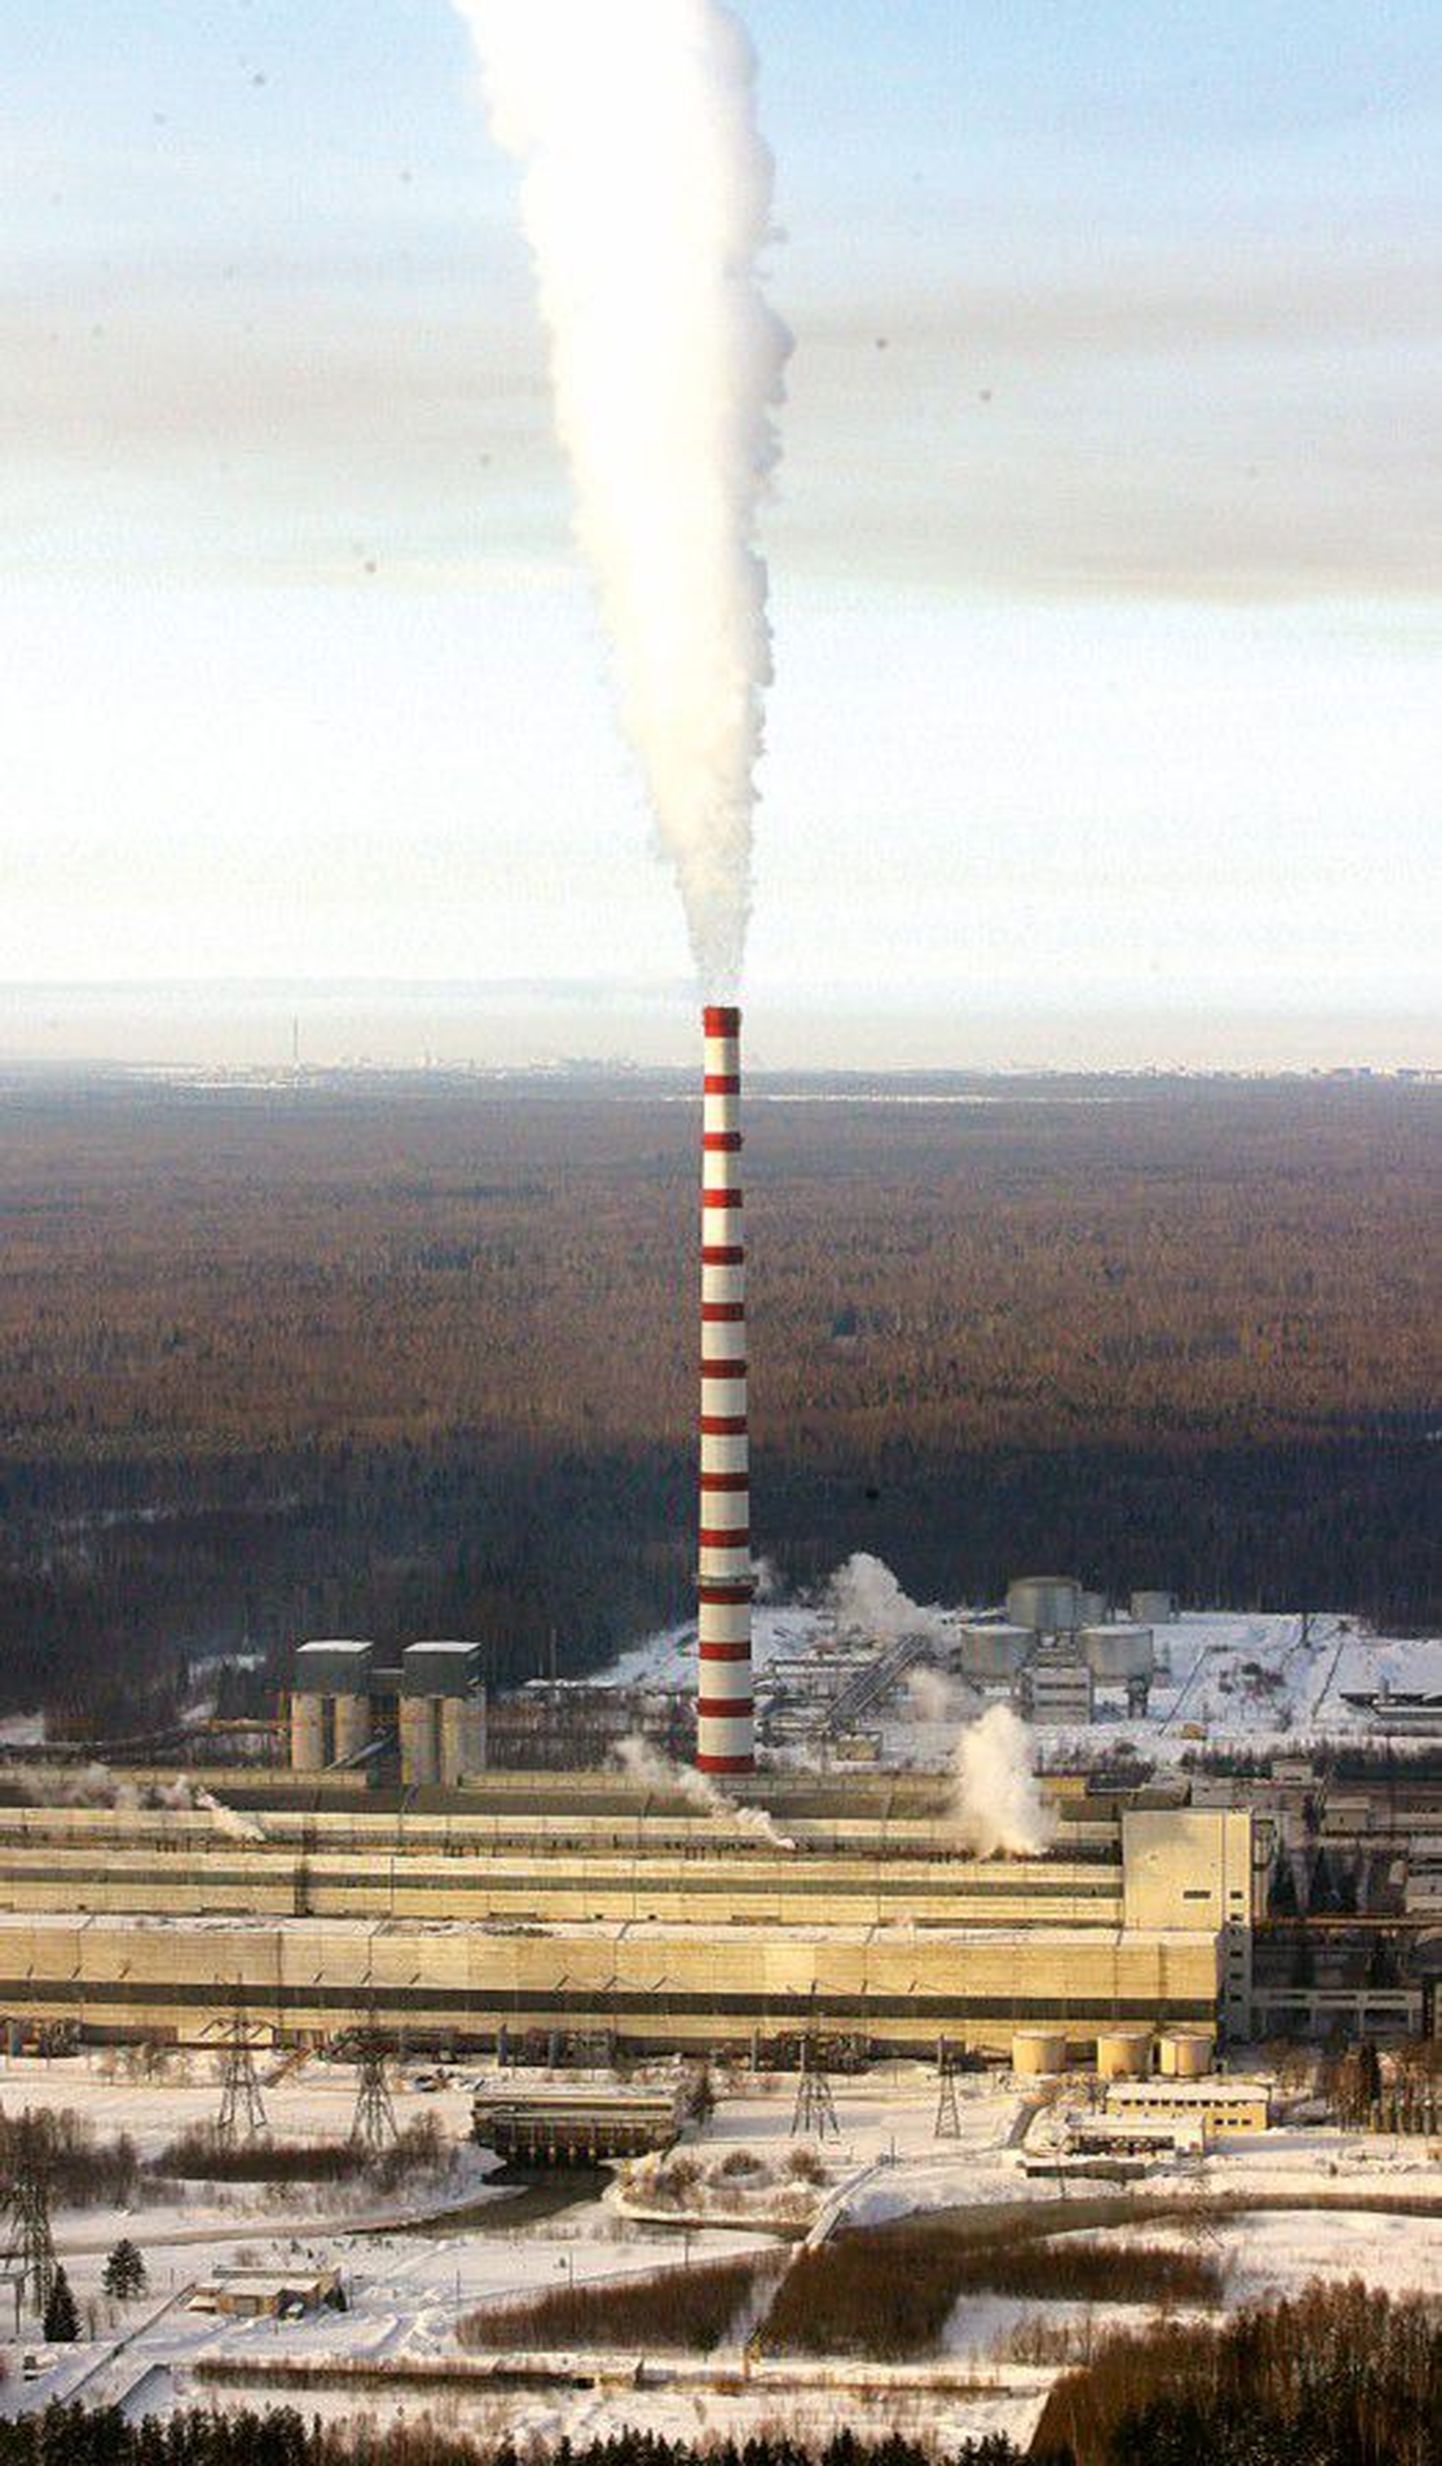 Saksa firma Danpower otsib võimalusi investeerimiseks Eesti energeetikasse.